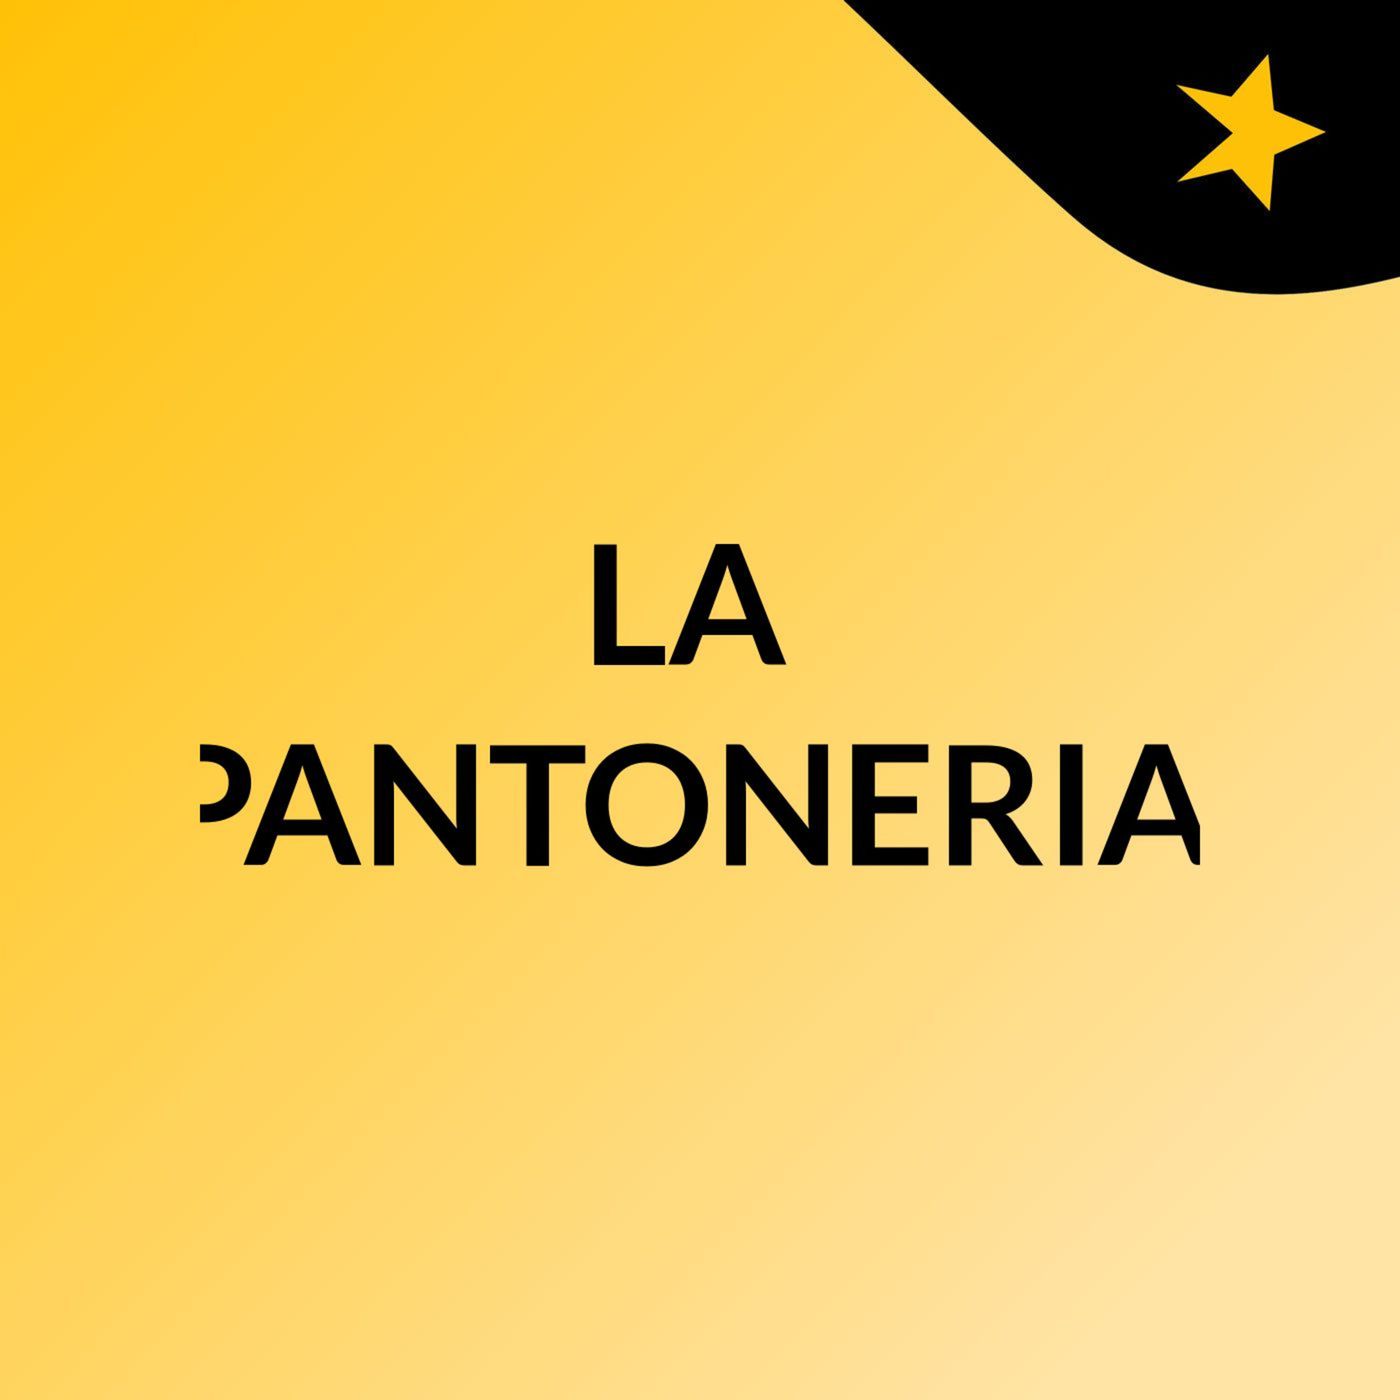 LA PANTONERIA